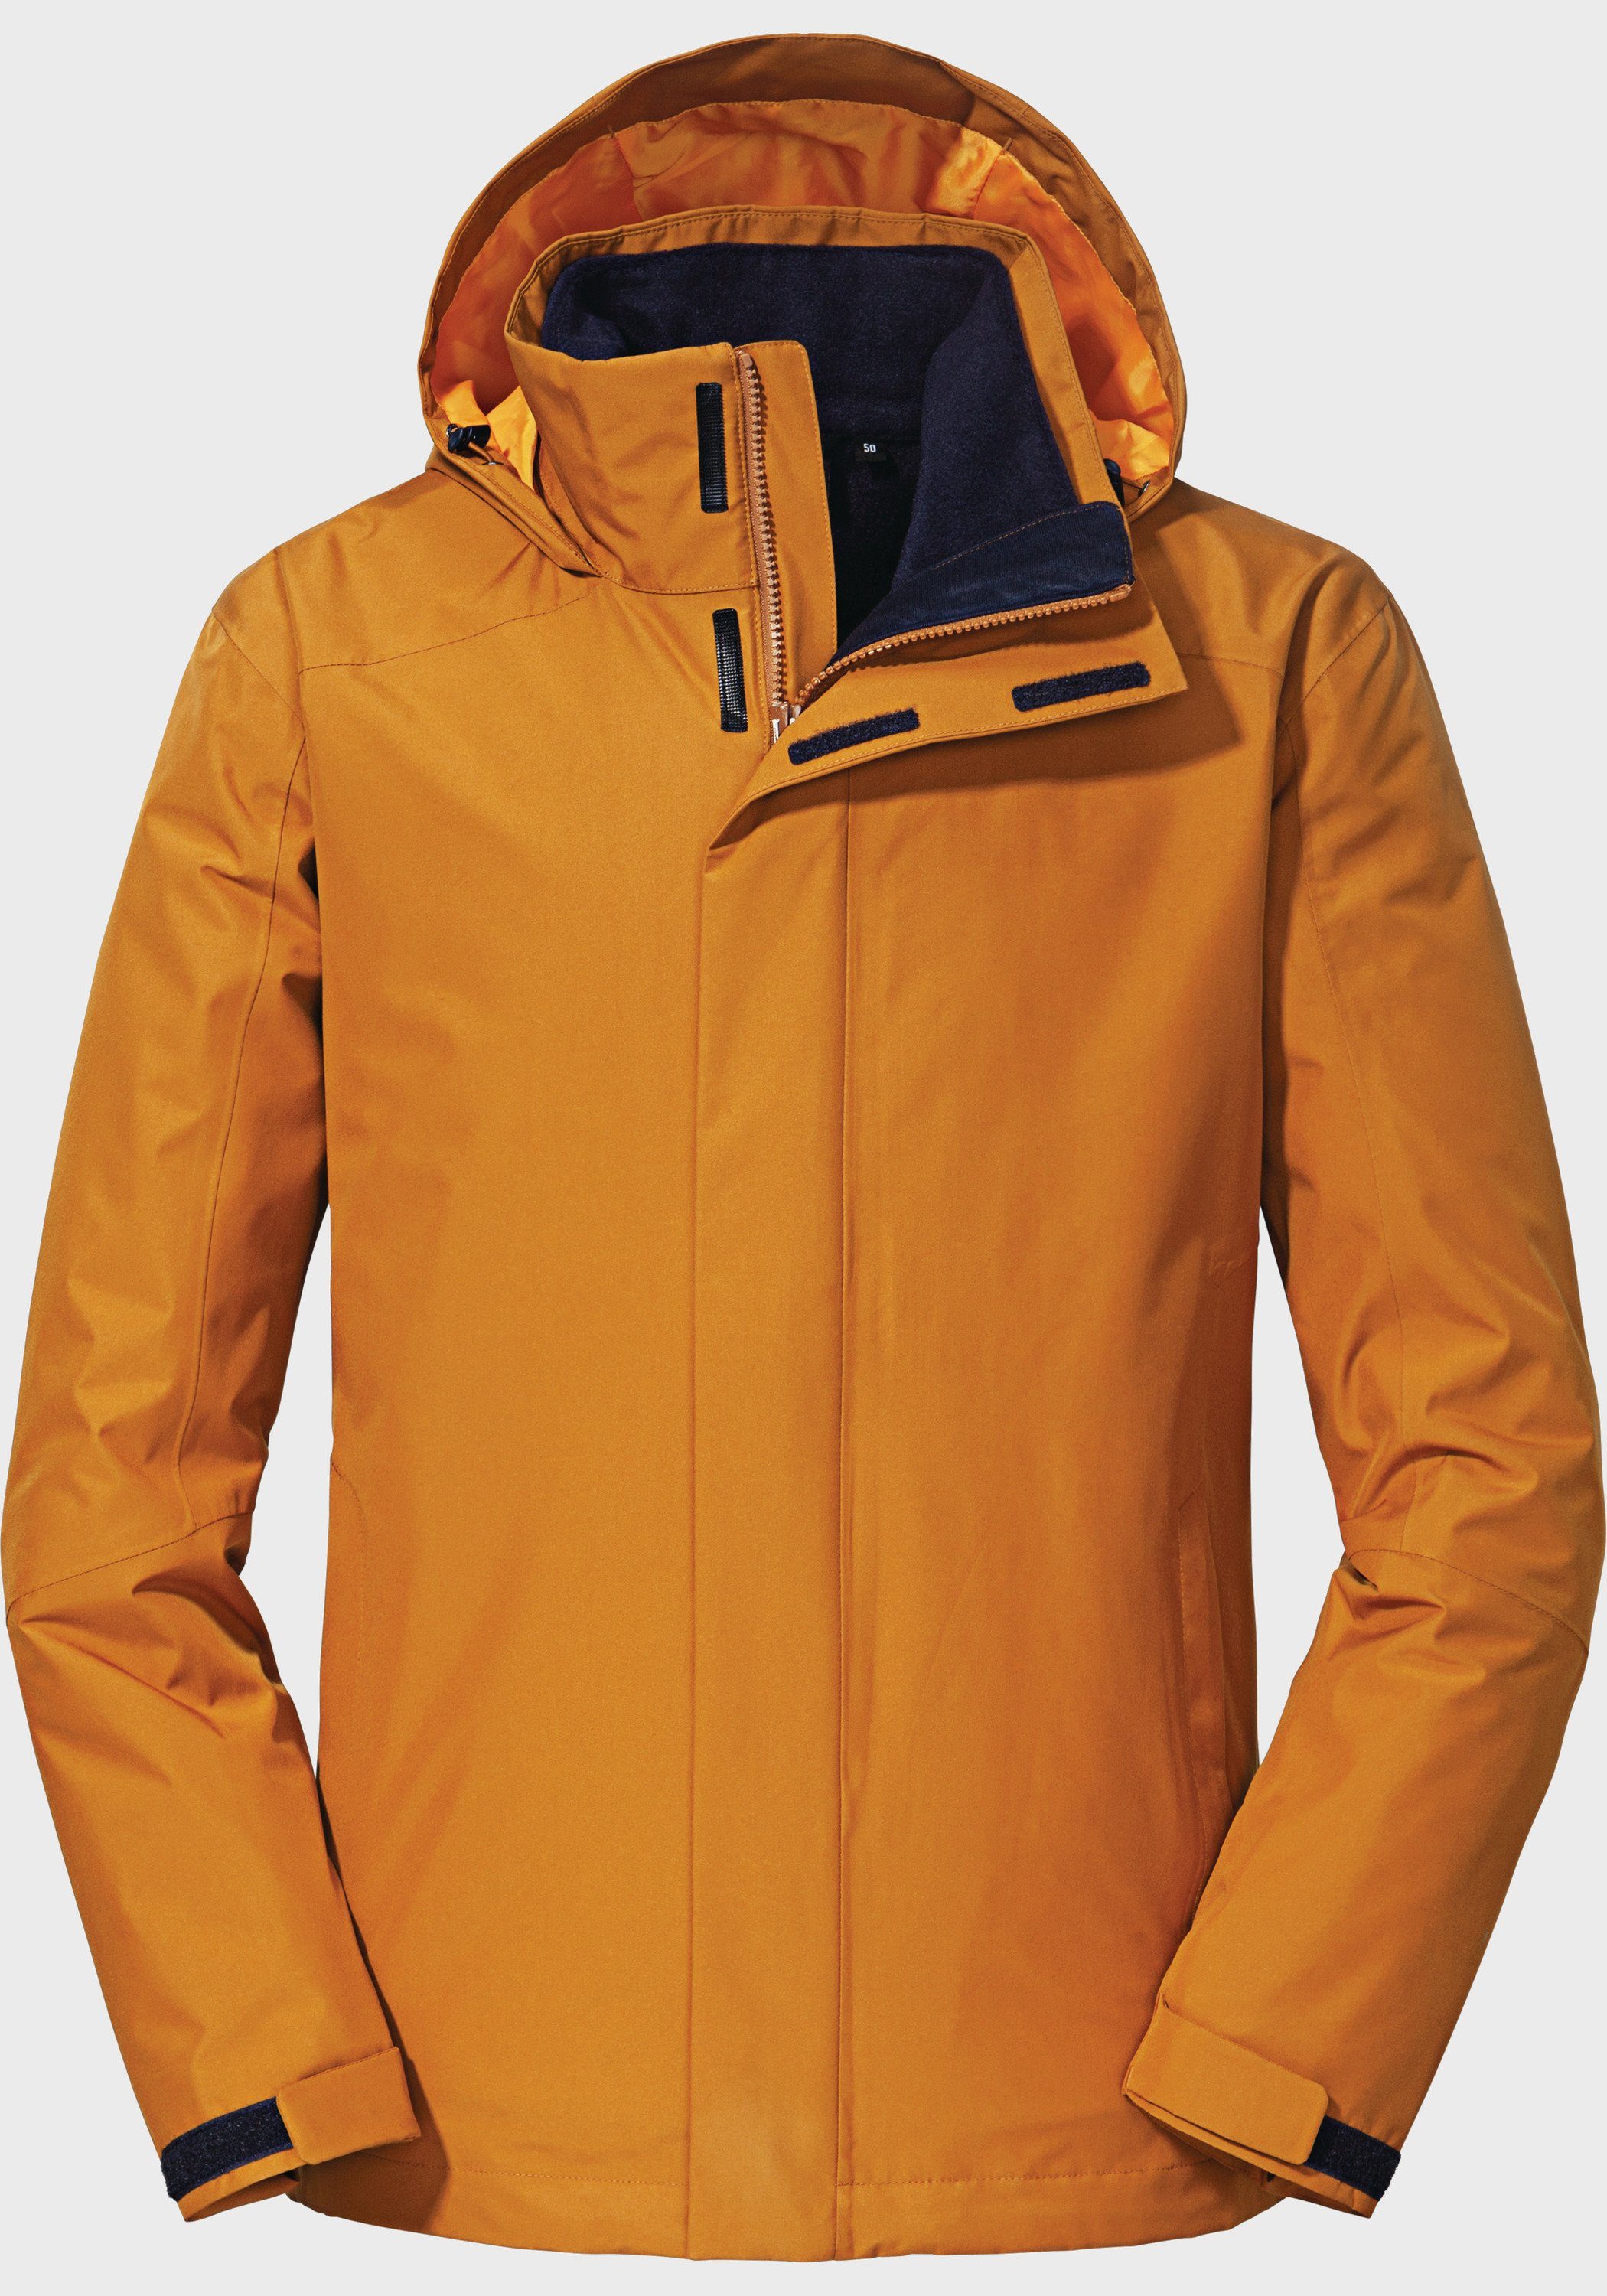 M Doppeljacke Partinello orange Jacket Schöffel 3in1